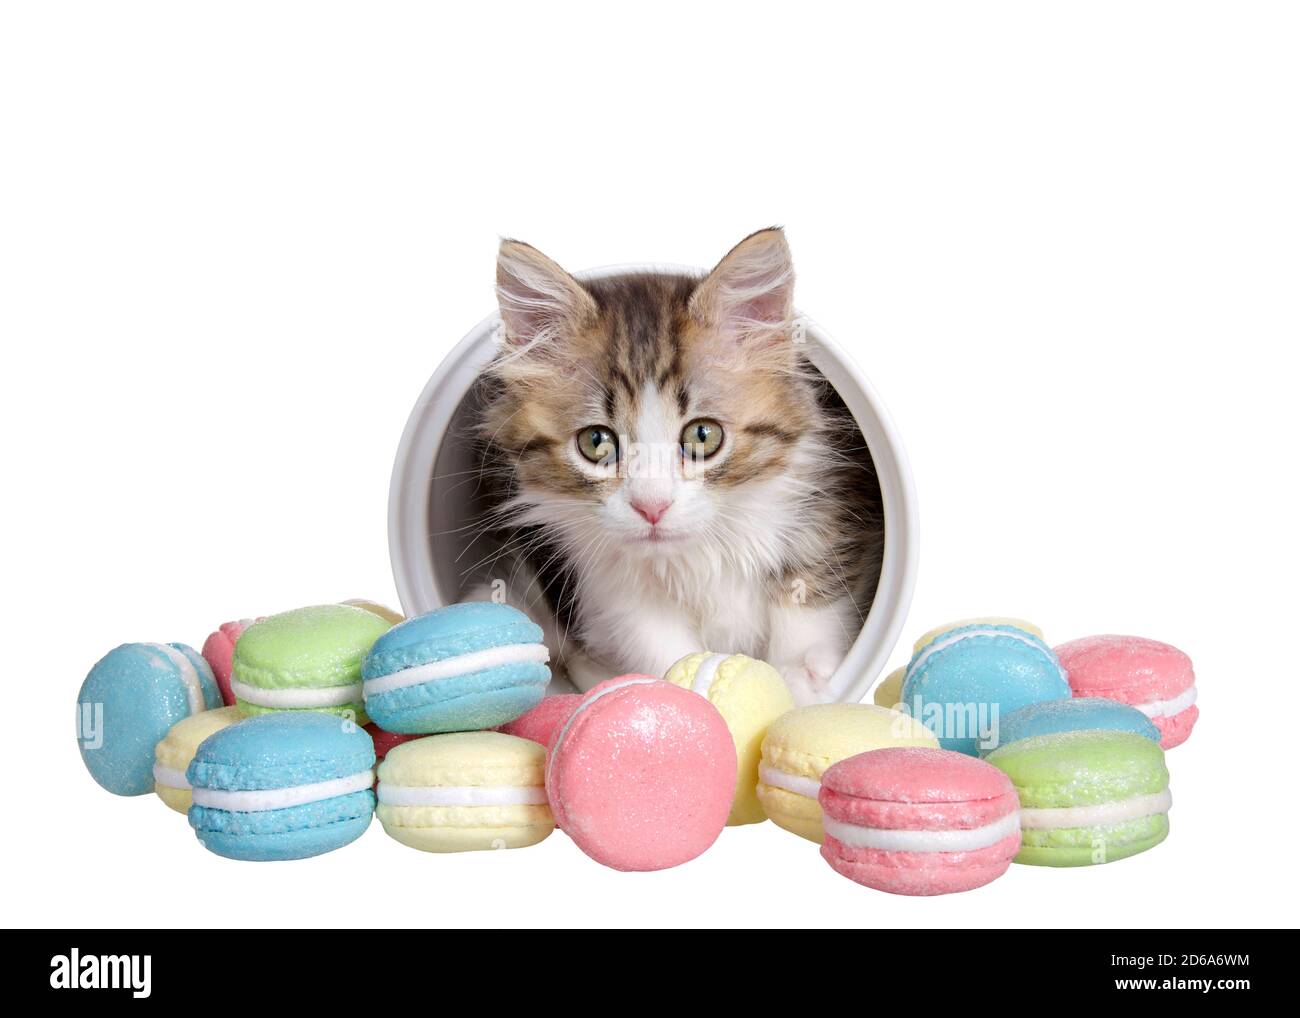 Adorable petit chaton piquant dans un pot de biscuit en porcelaine étiqueté, avec des biscuits de macaron à l'extérieur du pot dans diverses couleurs et saveurs. Isolé sur wh Banque D'Images